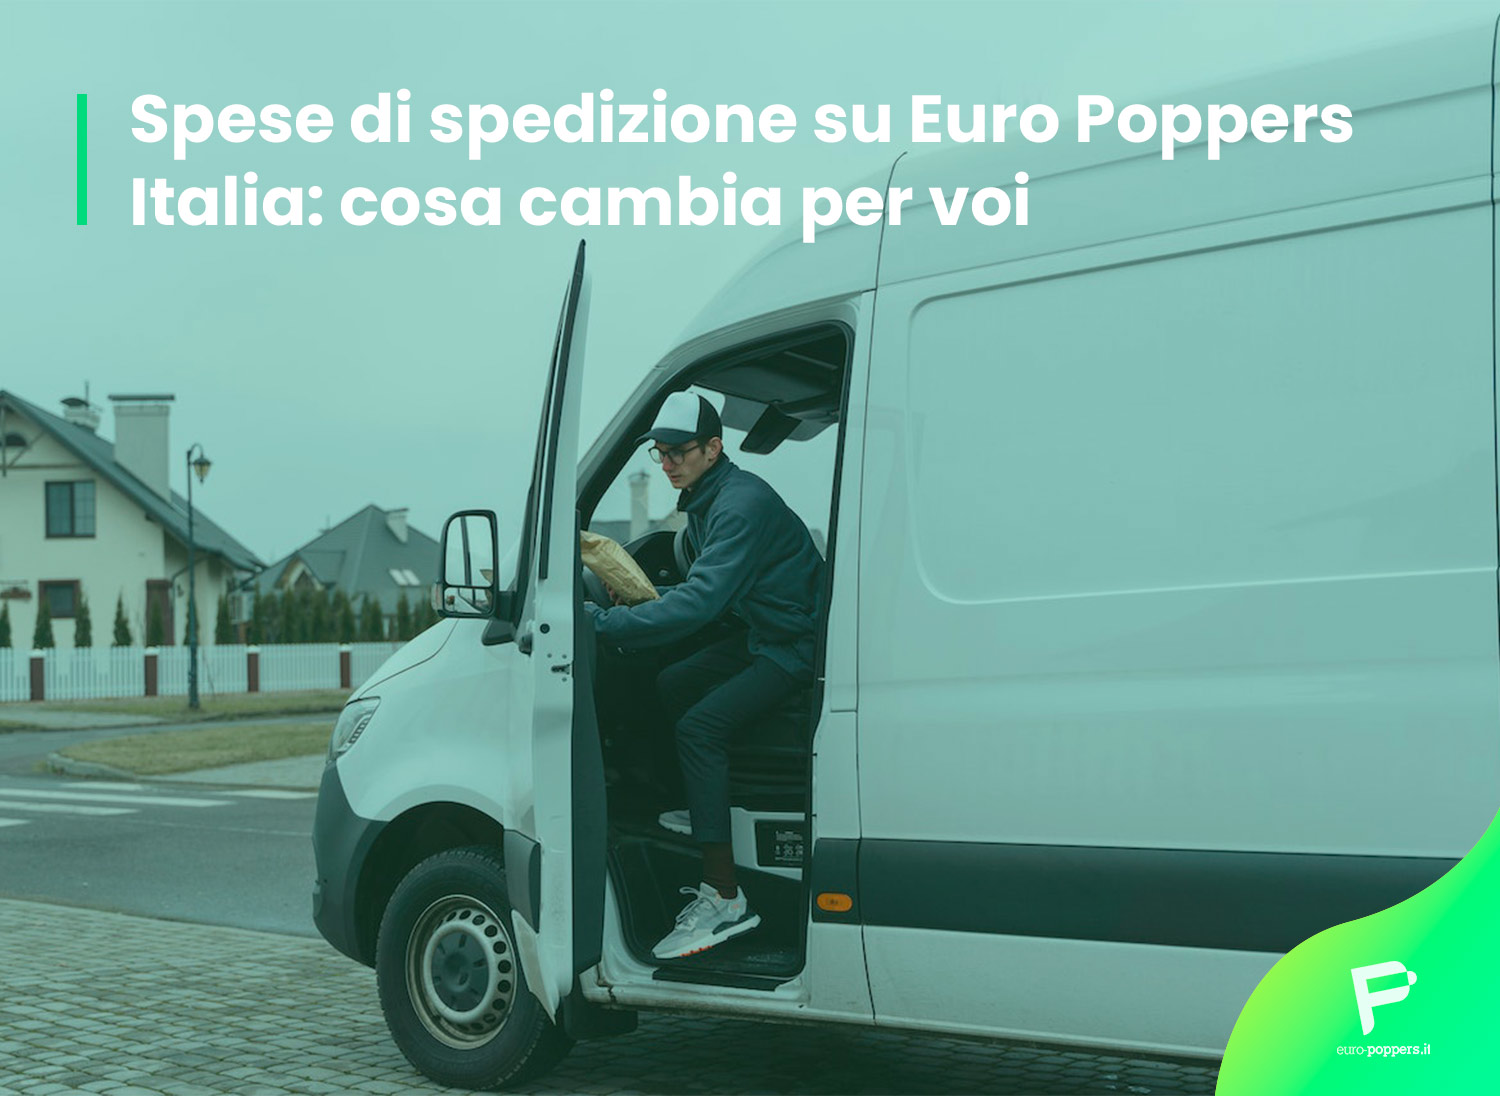 Al momento stai visualizzando Spese di spedizione su Euro Poppers Italia: cosa cambia per voi